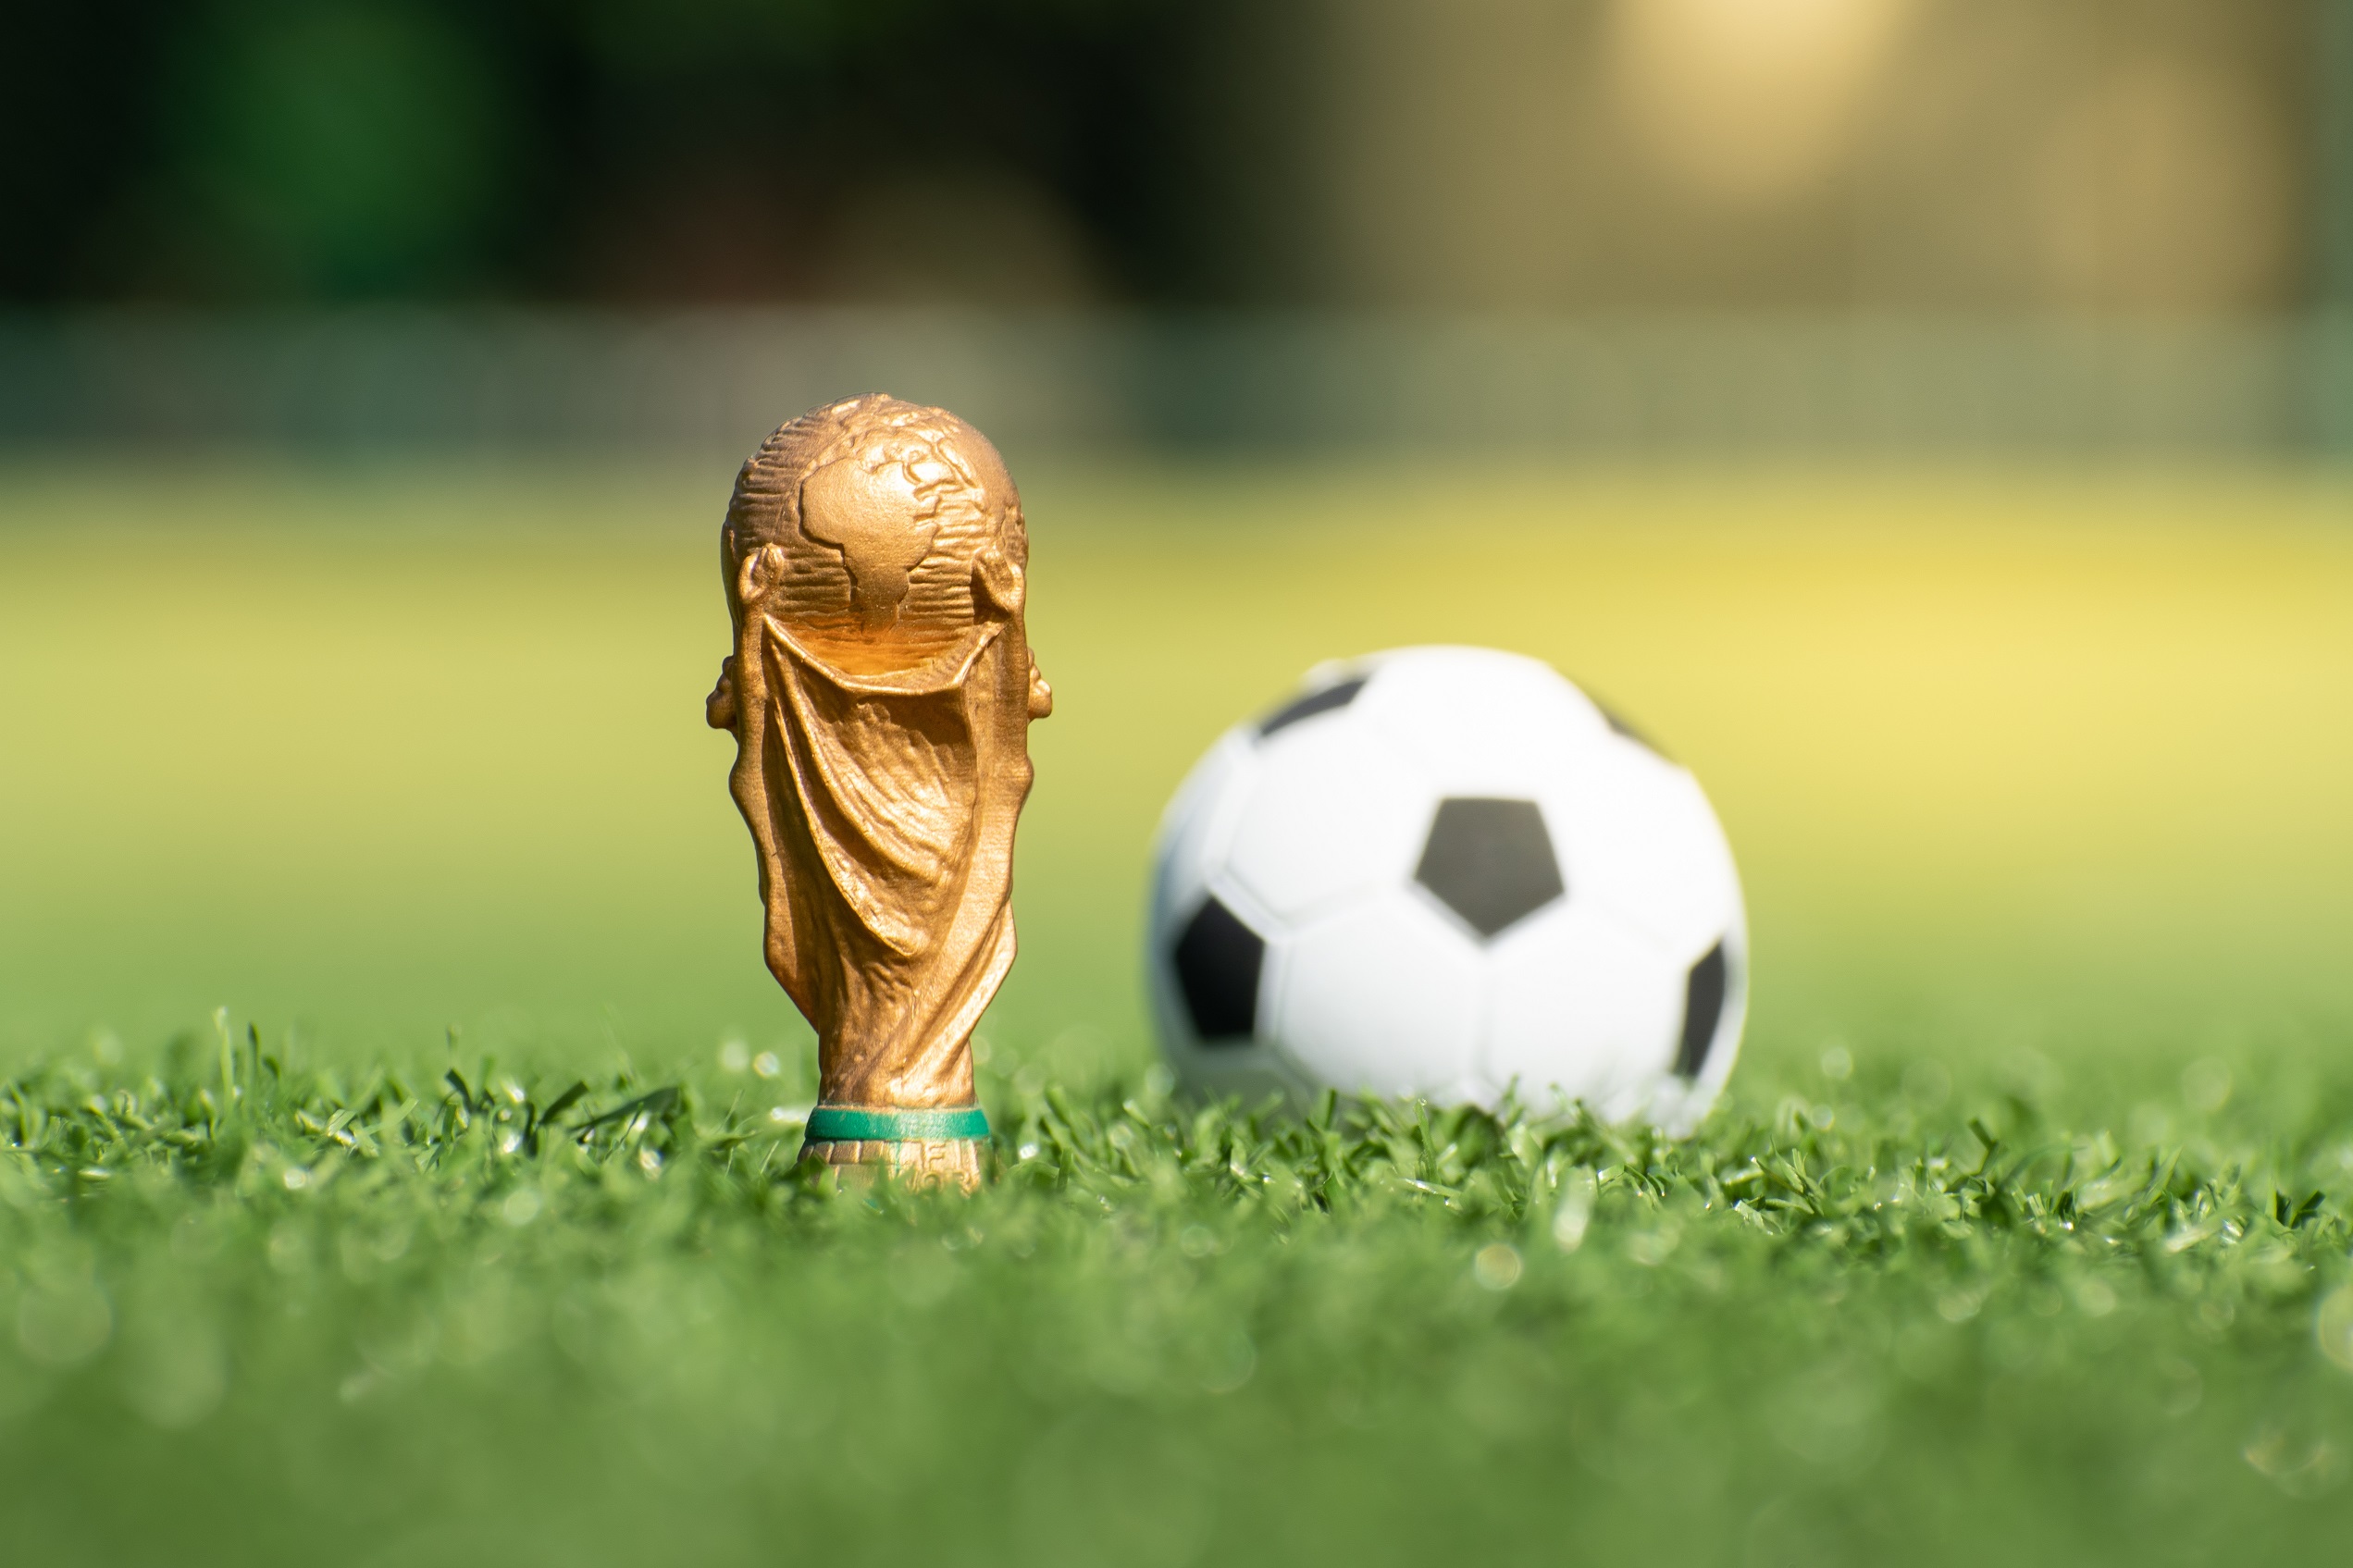 Jogos de amanhã da Copa do Mundo 2022: horários do dia #7